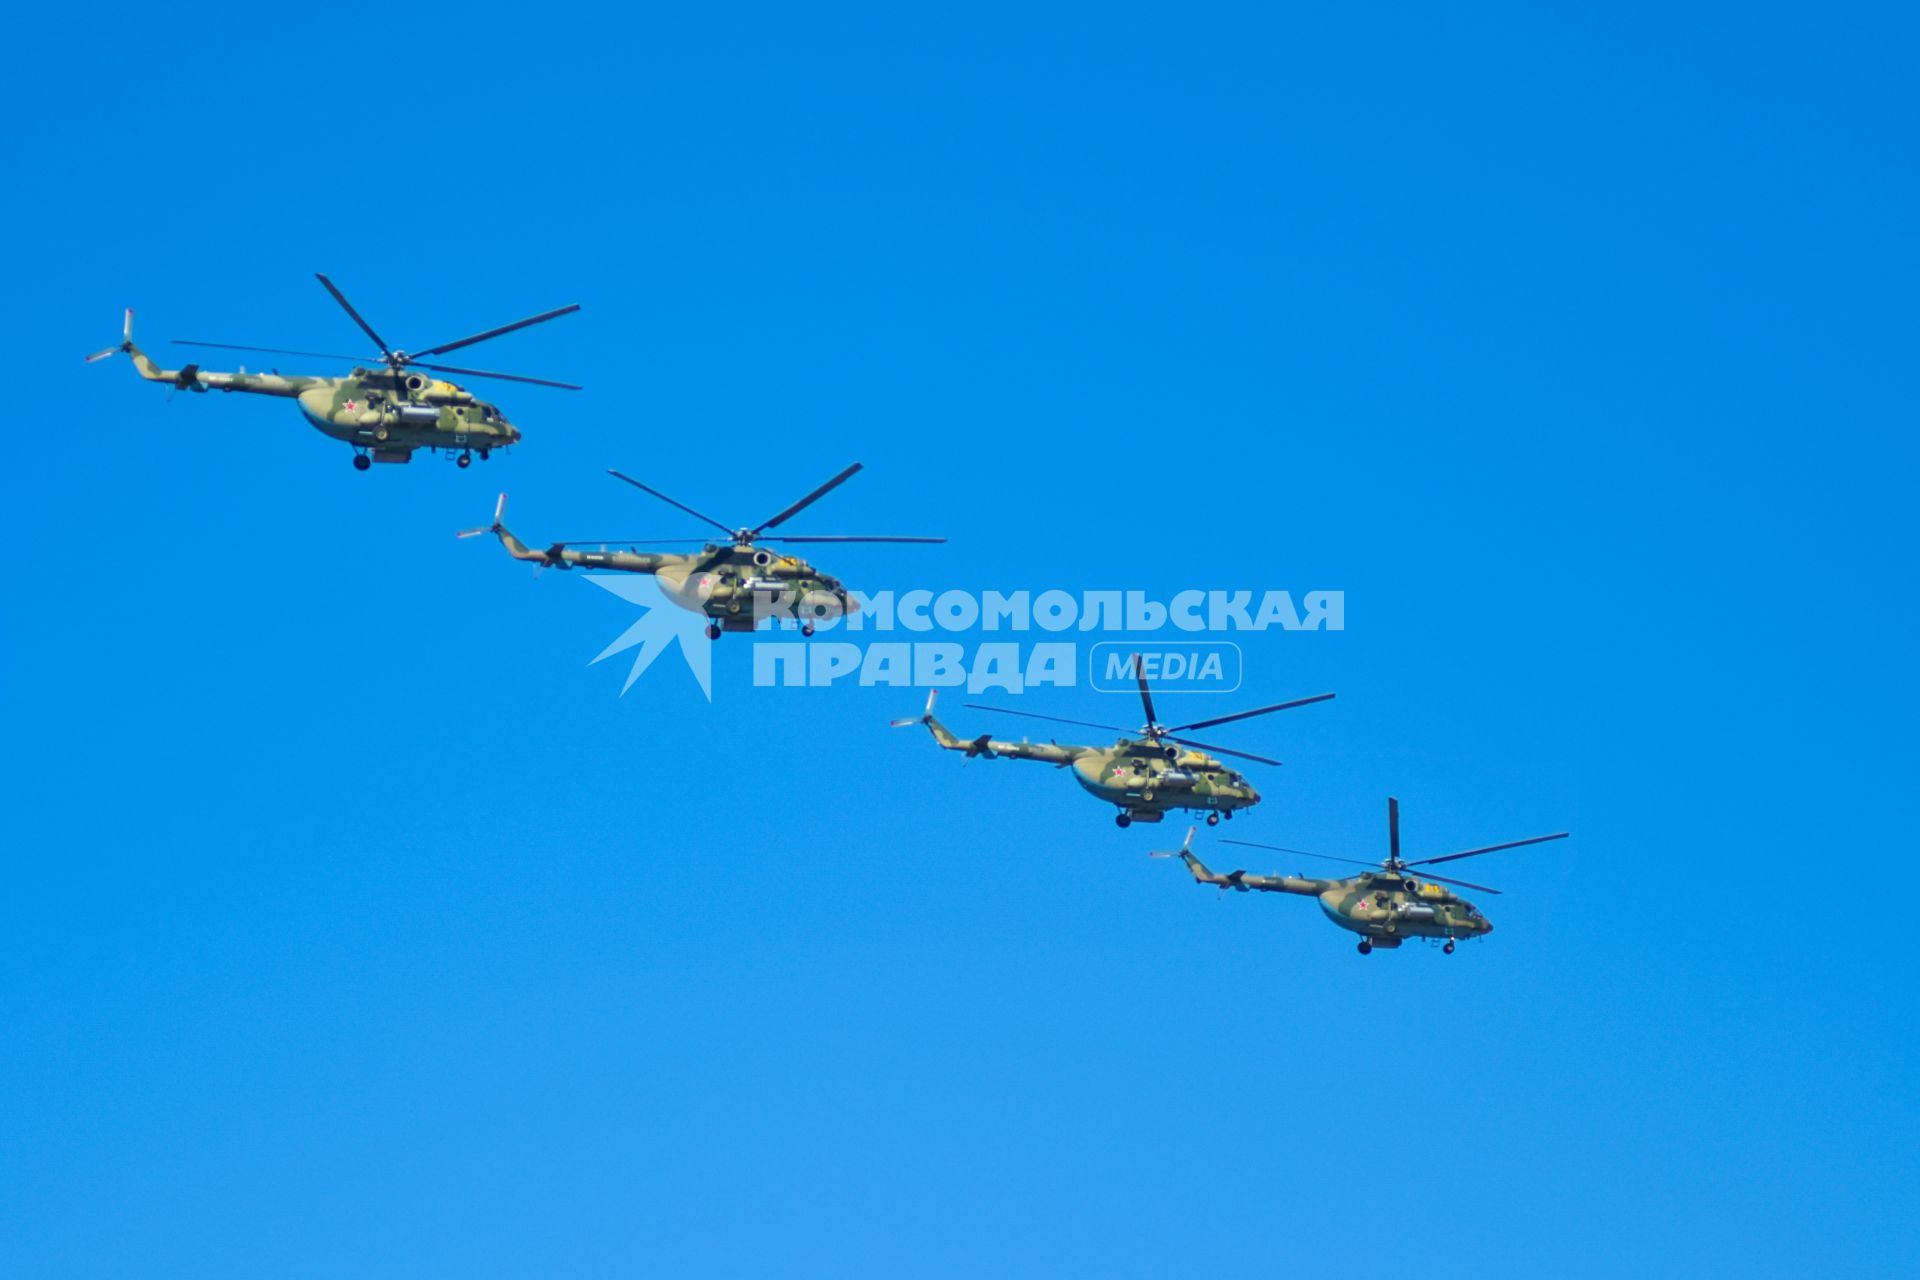 Новосибирск. Многоцелевые вертолеты Ми-8МТ во время воздушного Парада Победы летят над городом.